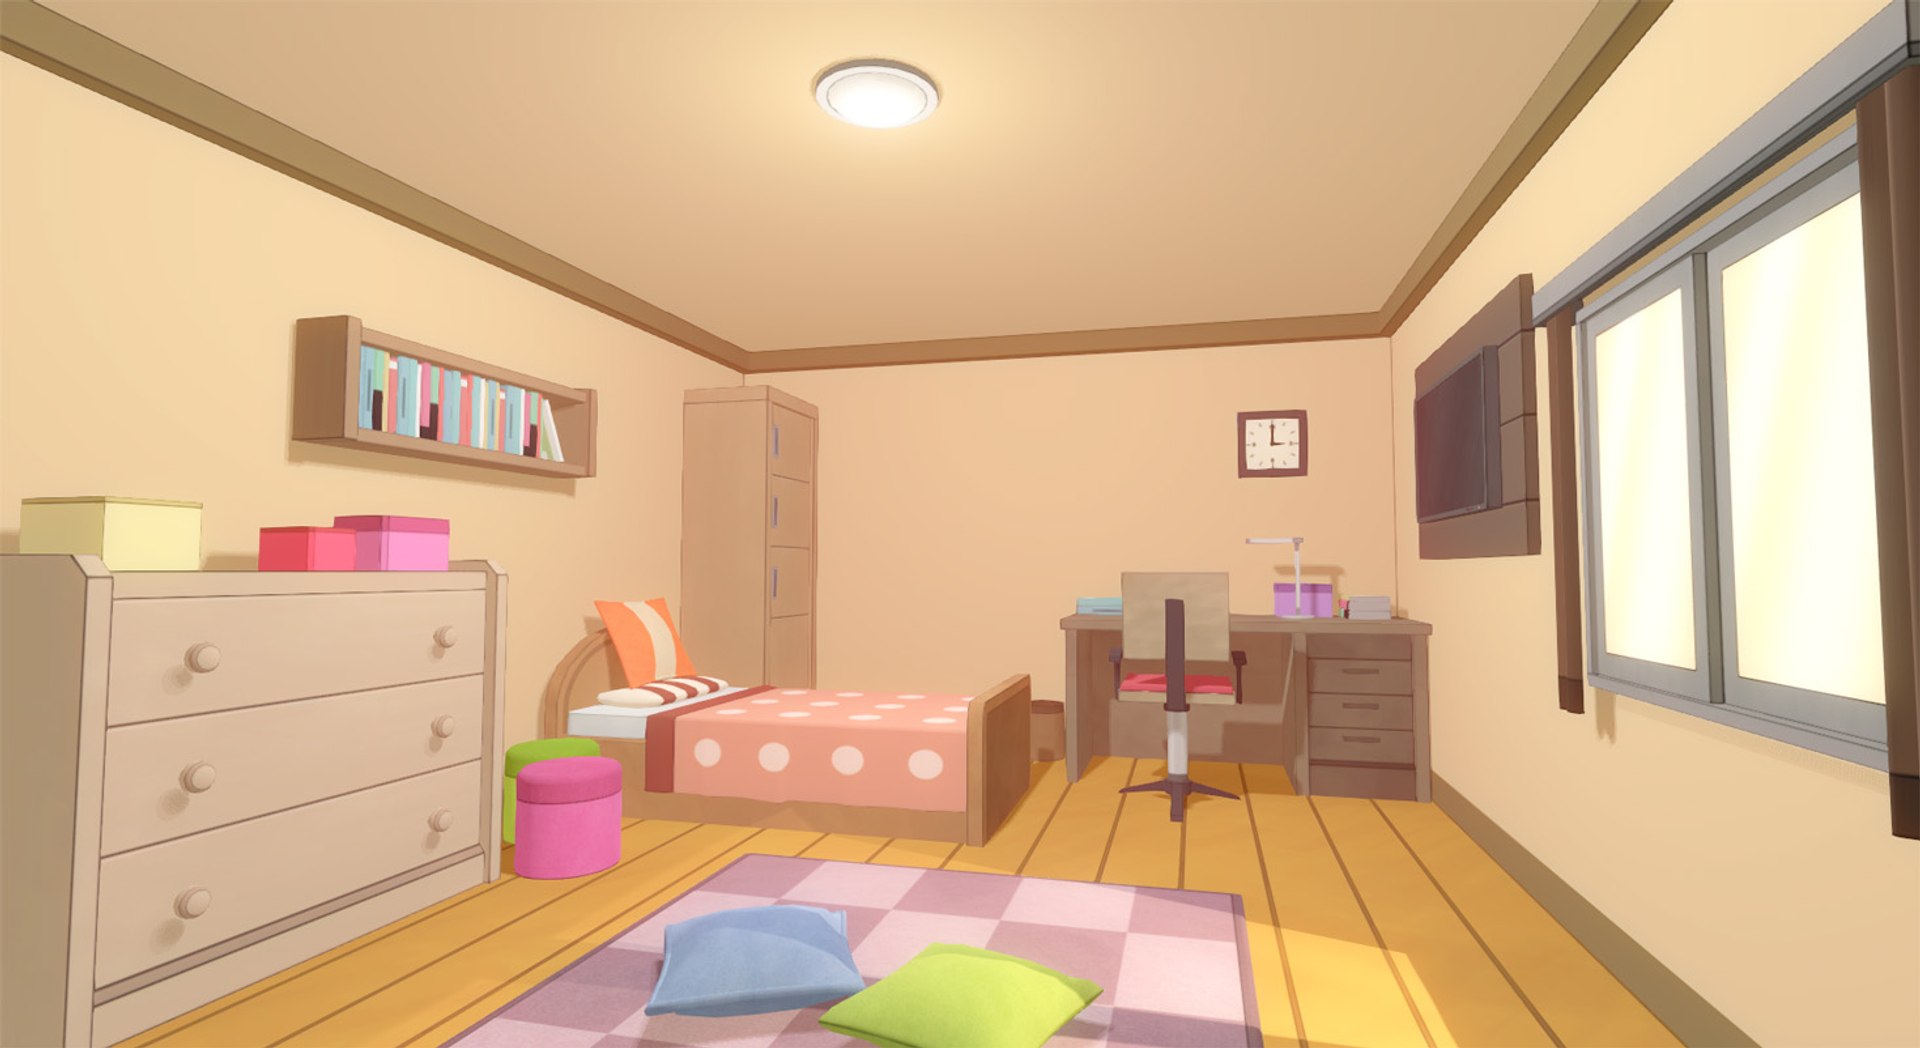 5 ý tưởng anime room decor cho phòng ngủ của bạn